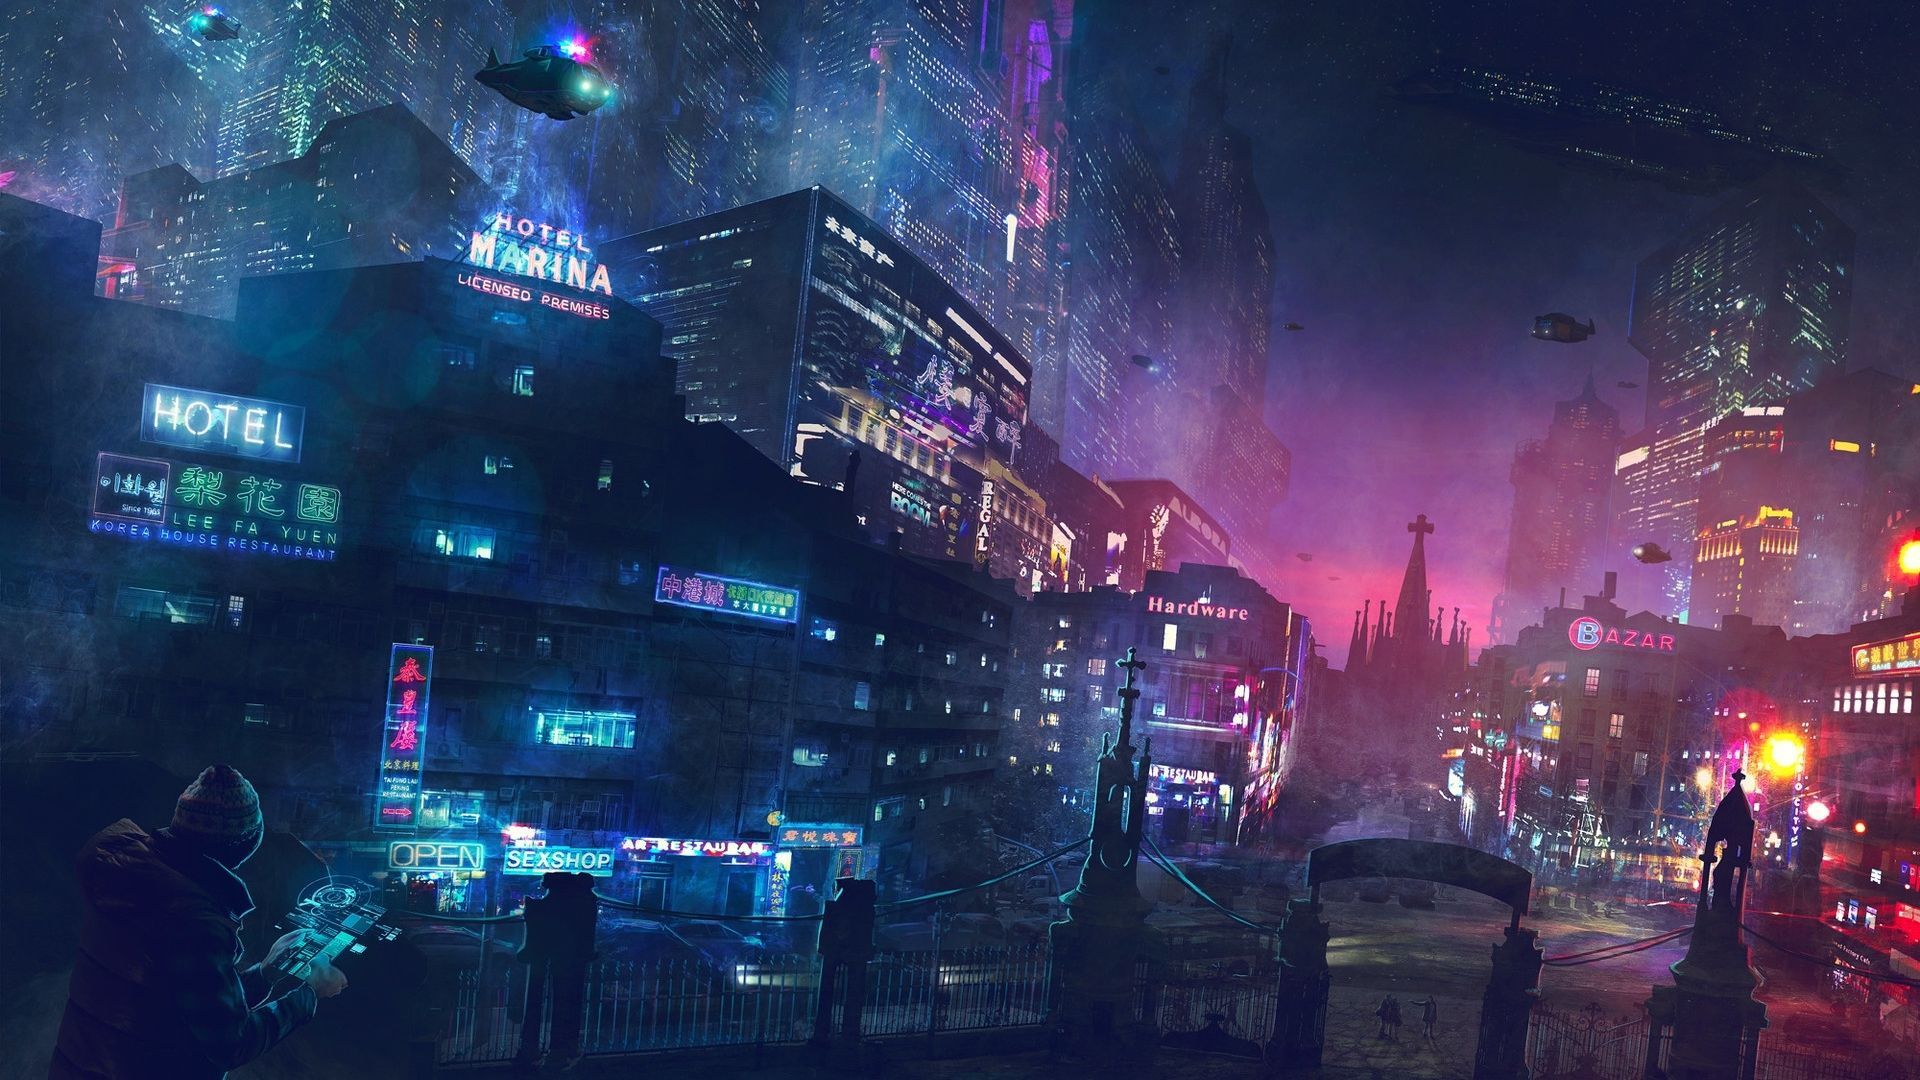 Sci Fi, Futuristic City, Neon Lights, Skyscrapers, Buildings